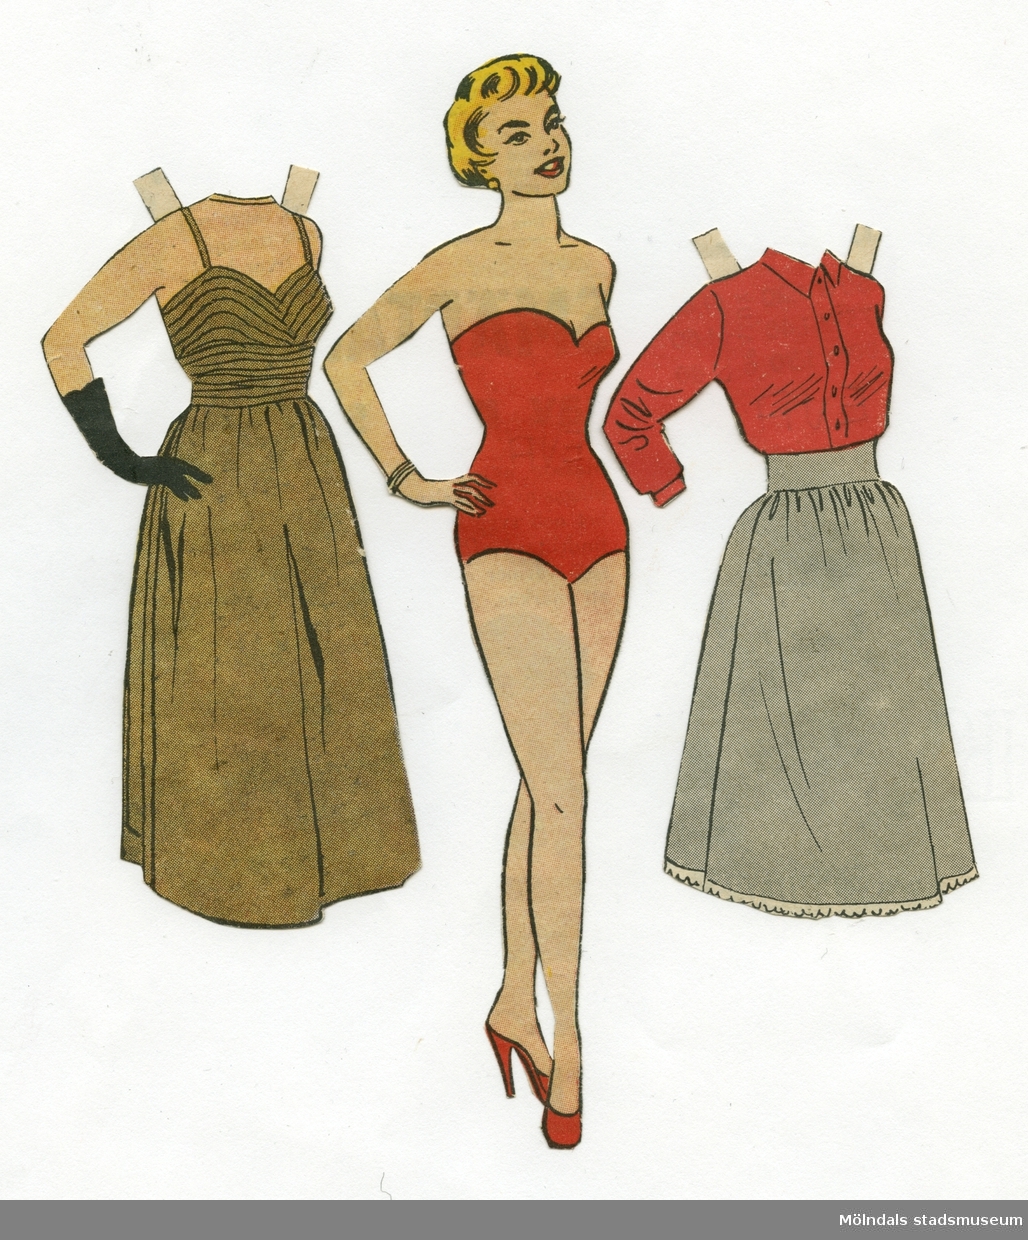 Pappersdocka med kläder, urklippta ur Hemmets Veckotidning på 1950-talet. Docka och kläder är märkta "Eva" på baksidan - dockans namn. Dockan föreställer en kvinna med kort, blont hår, iklädd röd baddräkt och högklackade skor. Garderoben består av en aftonklänning och ett set med blus och kjol. Docka och kläder förvaras i ett litet kuvert av smörpapper (MM 04624-2) med tryckt text: "113 Hedvall", samt handskrivet: "Hemmets Veckotidningen, Pappersdockor". I kuvertet förvaras även andra pappersdockor och kläder (MM 04624-04635).